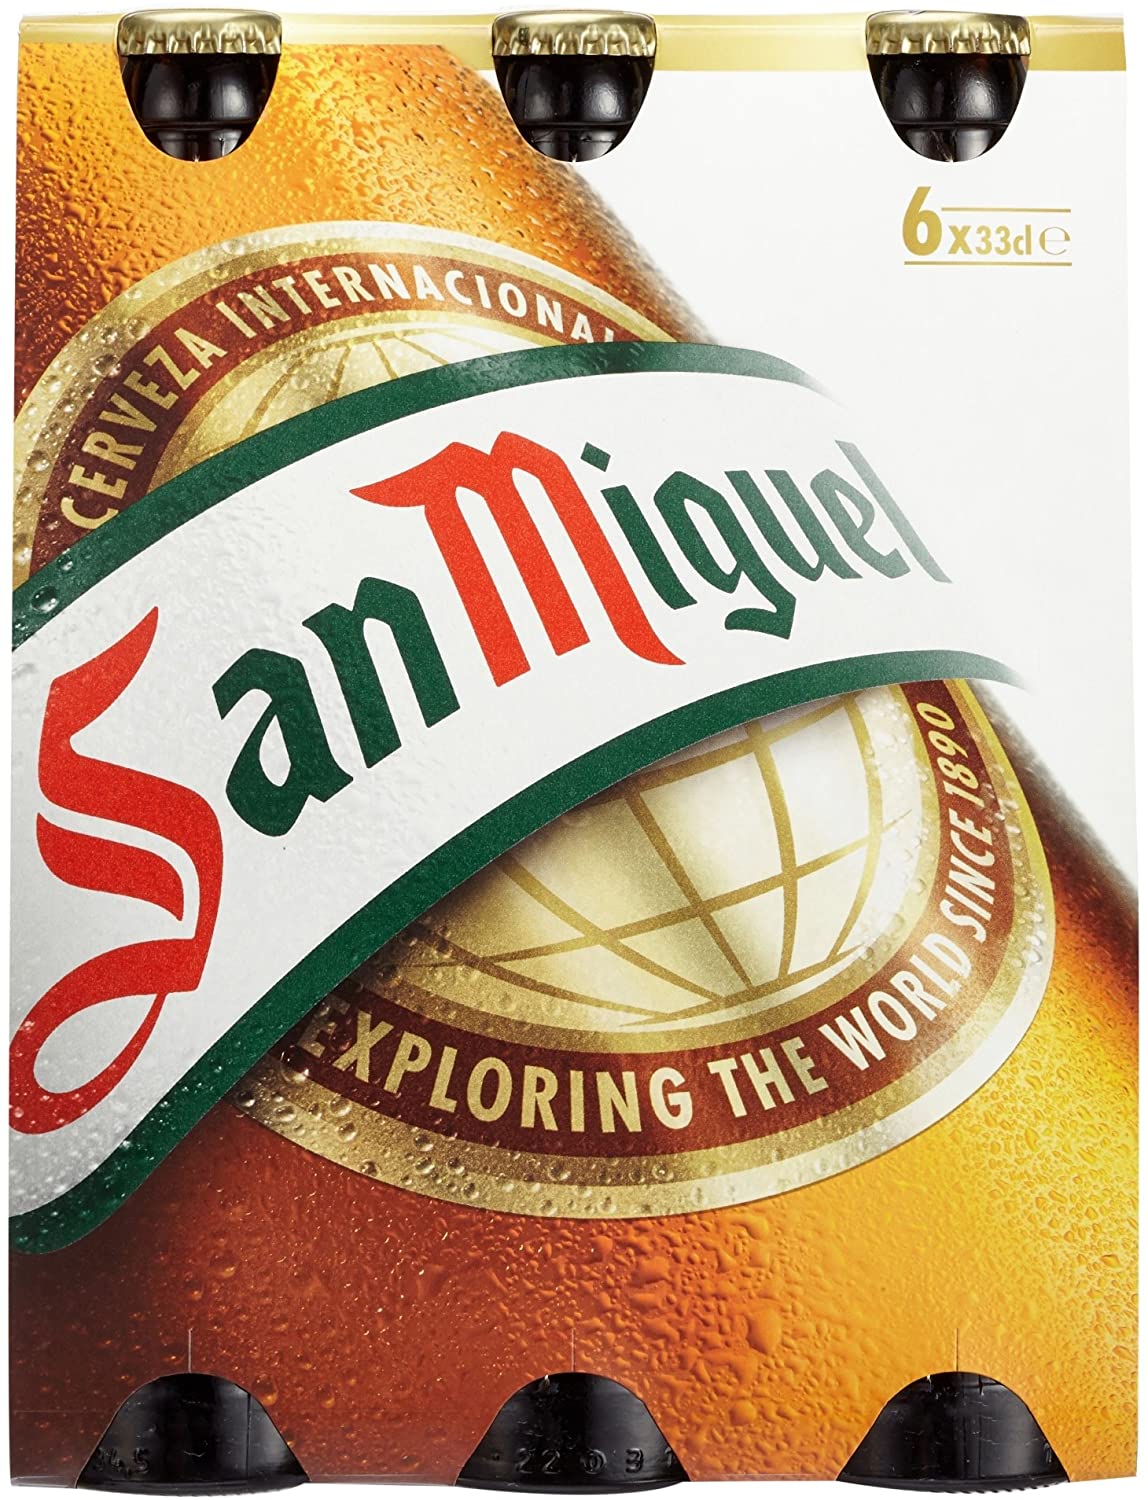 San Miguel Especial 0,33l- Das beliebte Lager aus Spanien mit 5,4%Vol.